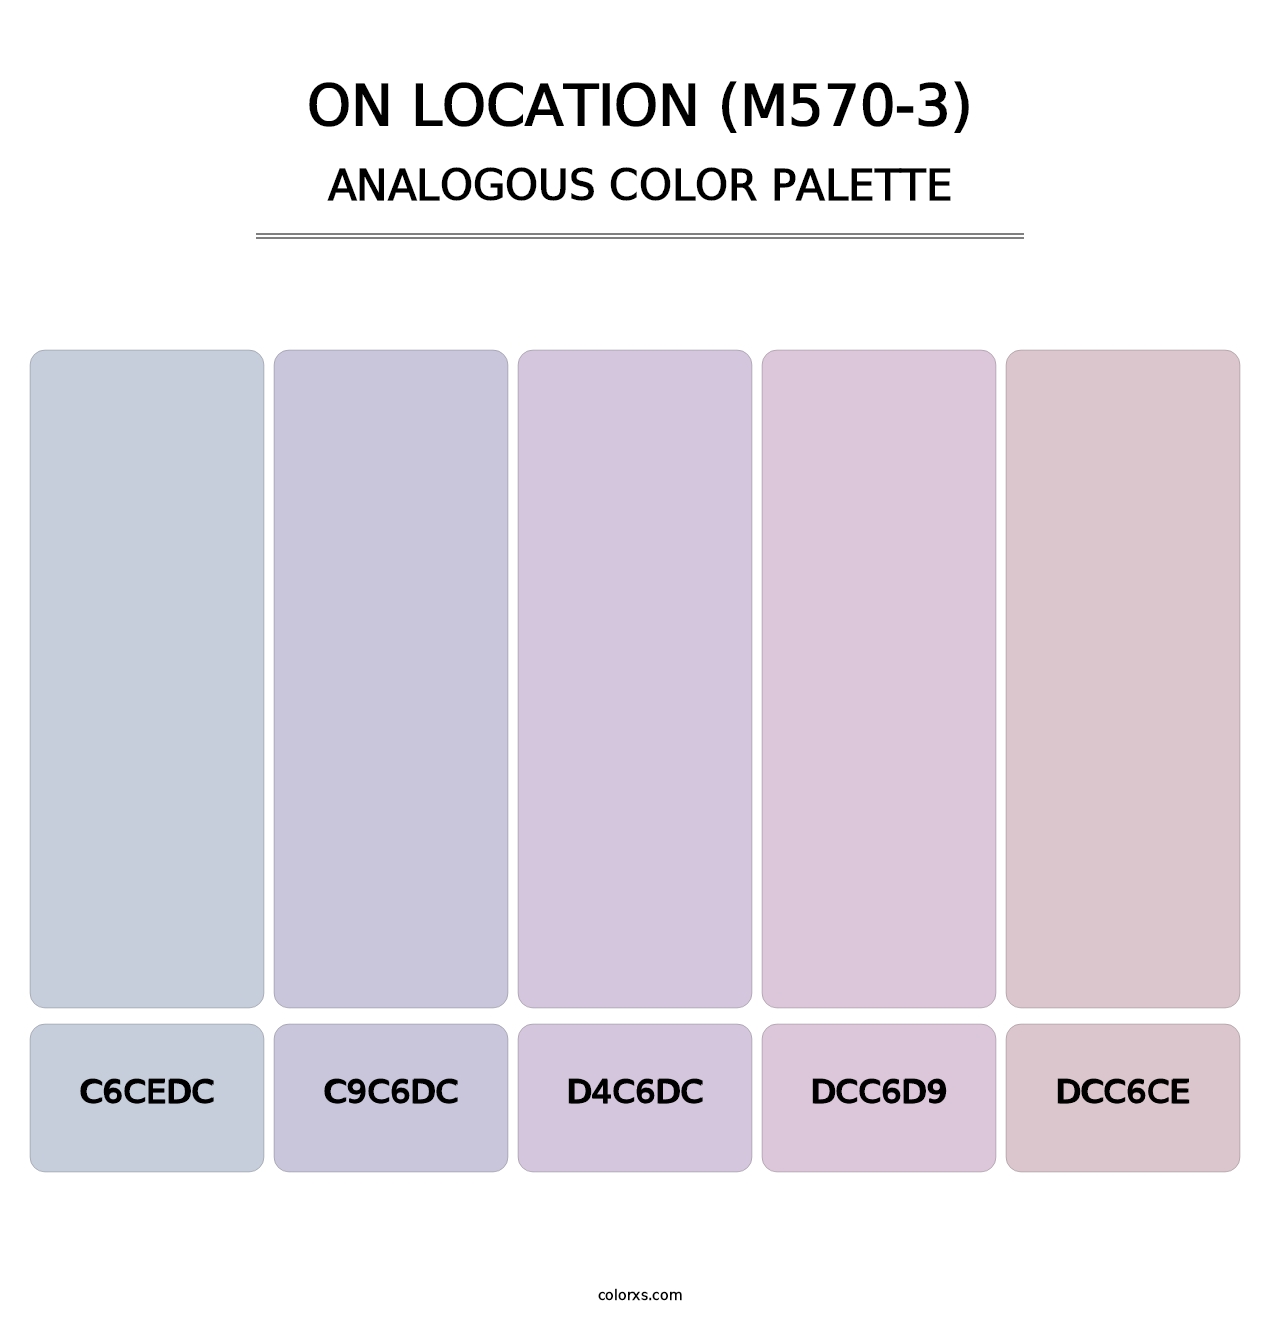 On Location (M570-3) - Analogous Color Palette